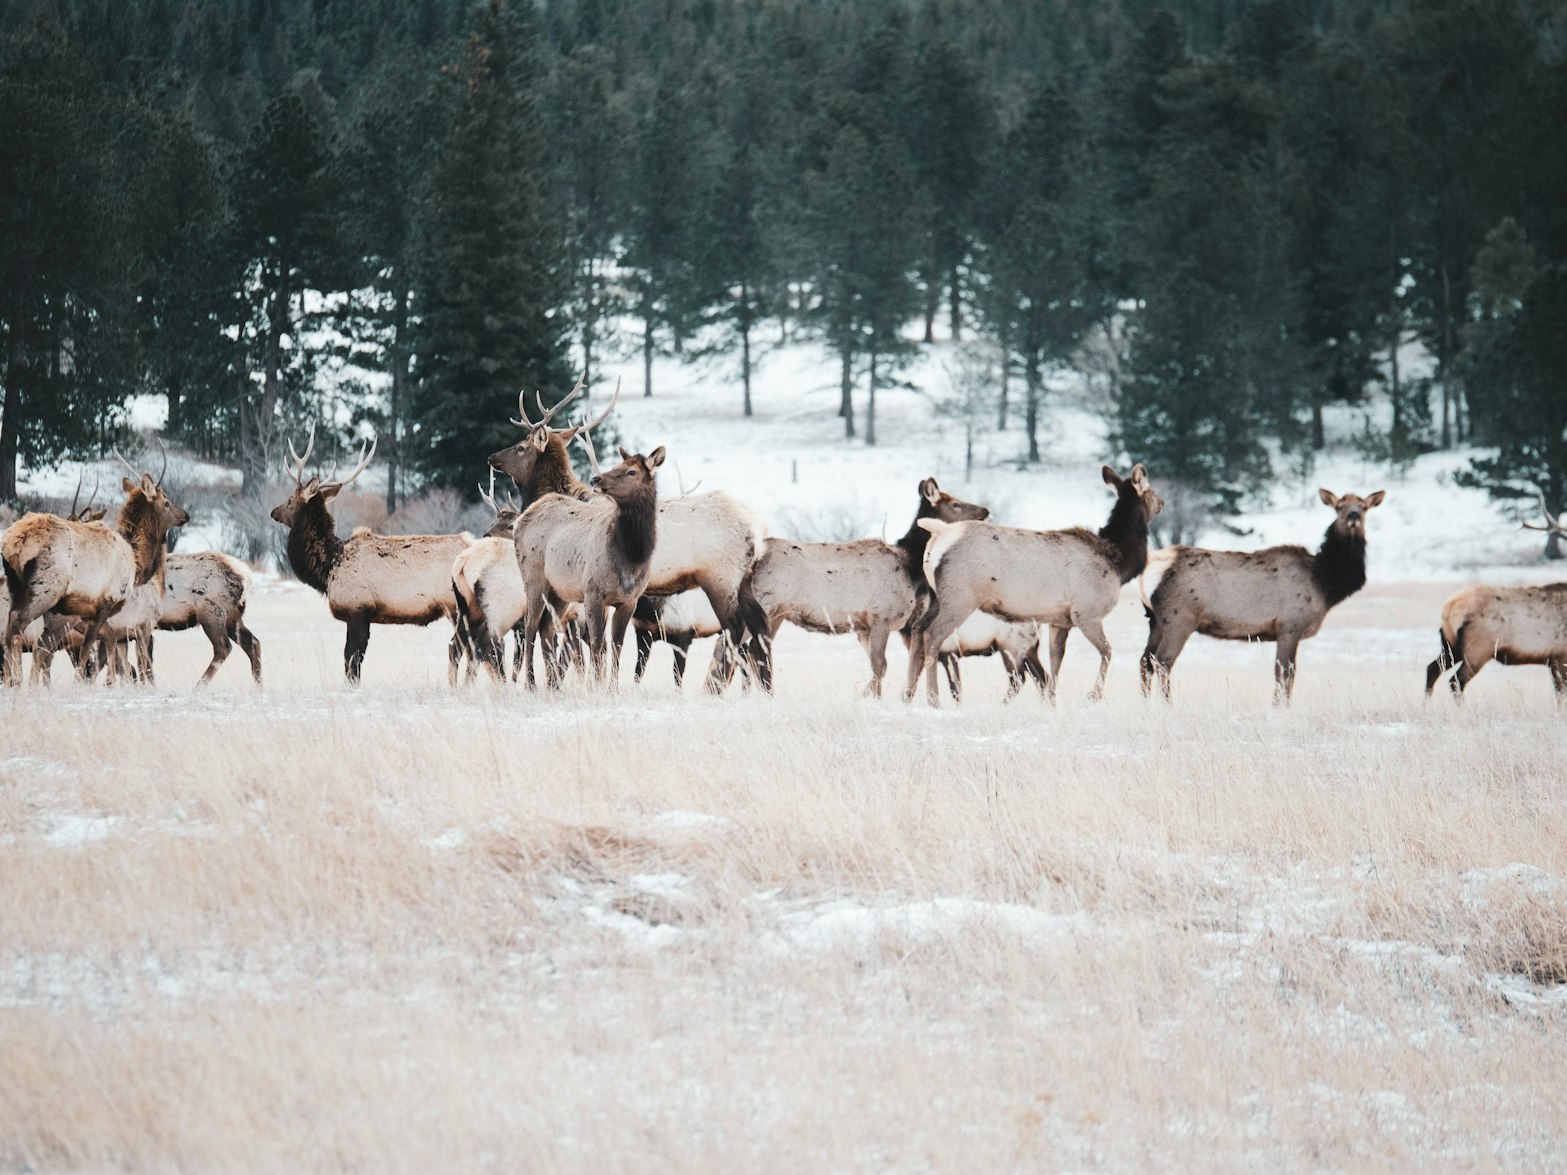 On the Elk Trail: Episode 2 – Elk Migration